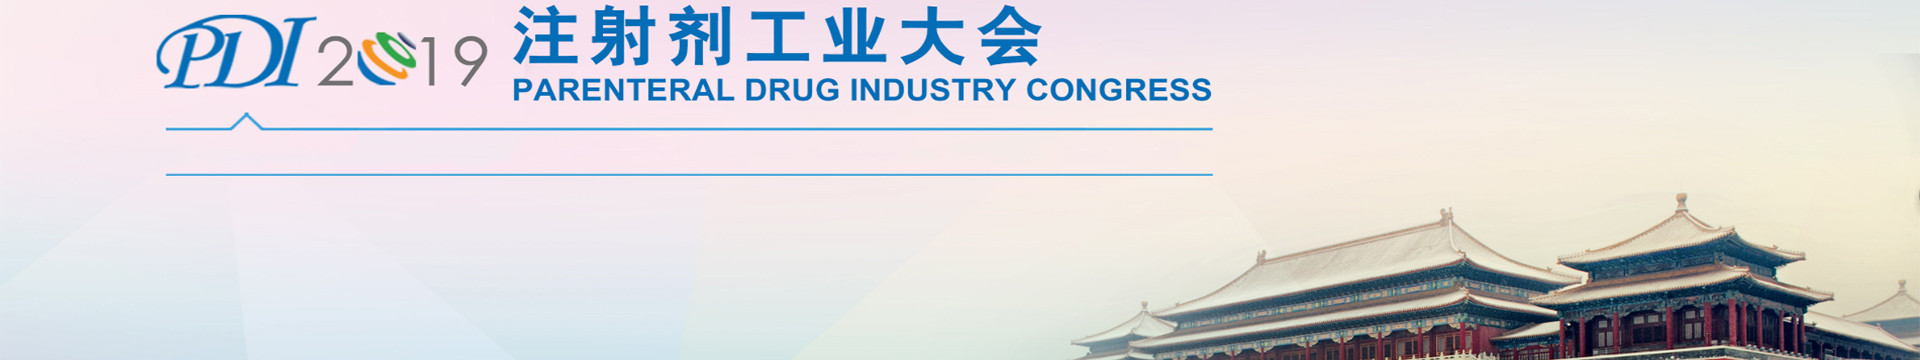 PDI2019注射剂工业大会